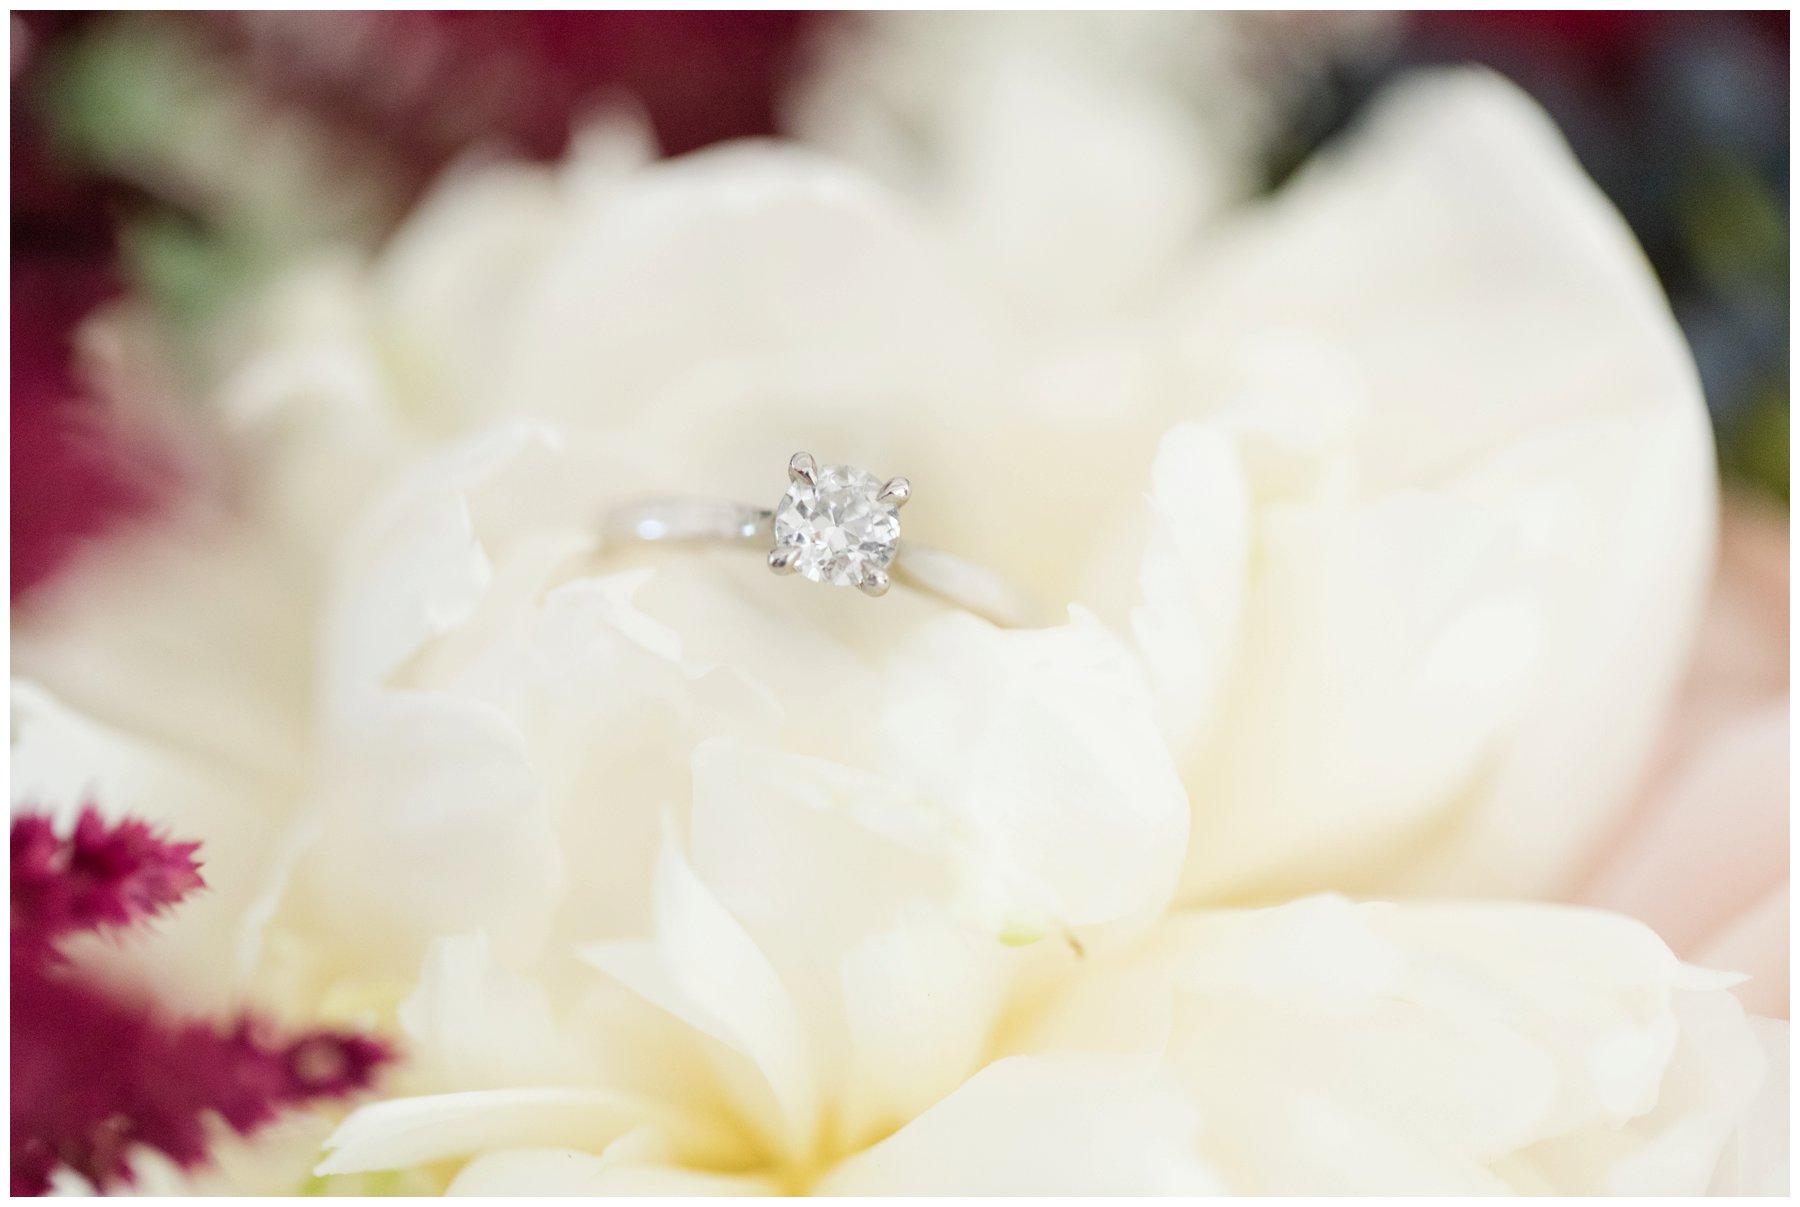 Engagement ring on white flower